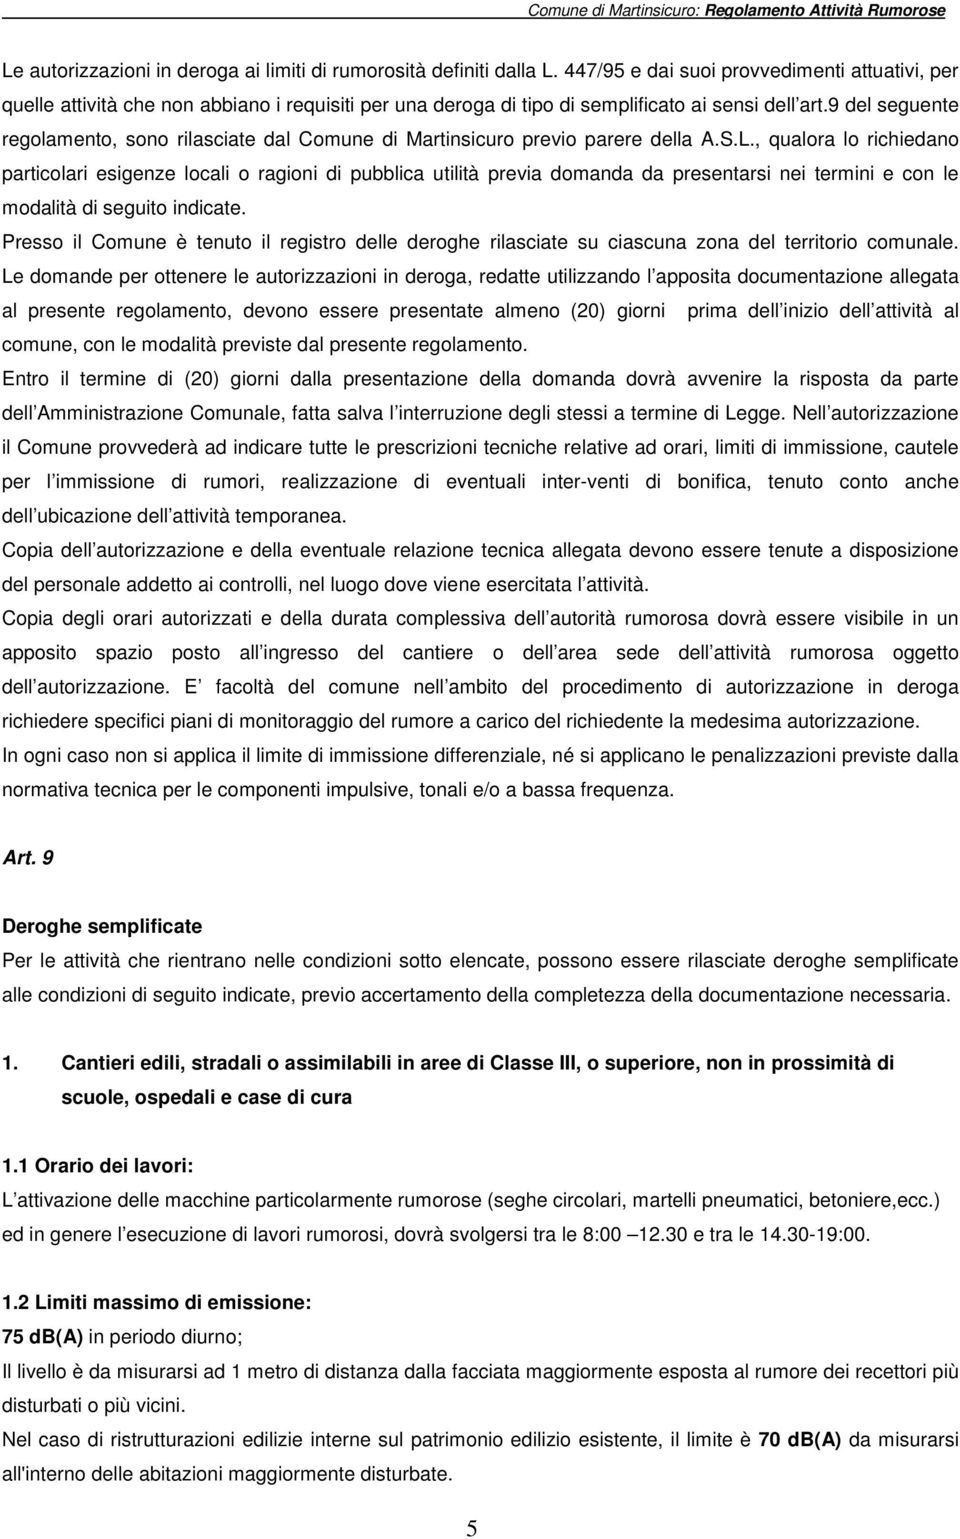 9 del seguente regolamento, sono rilasciate dal Comune di Martinsicuro previo parere della A.S.L.